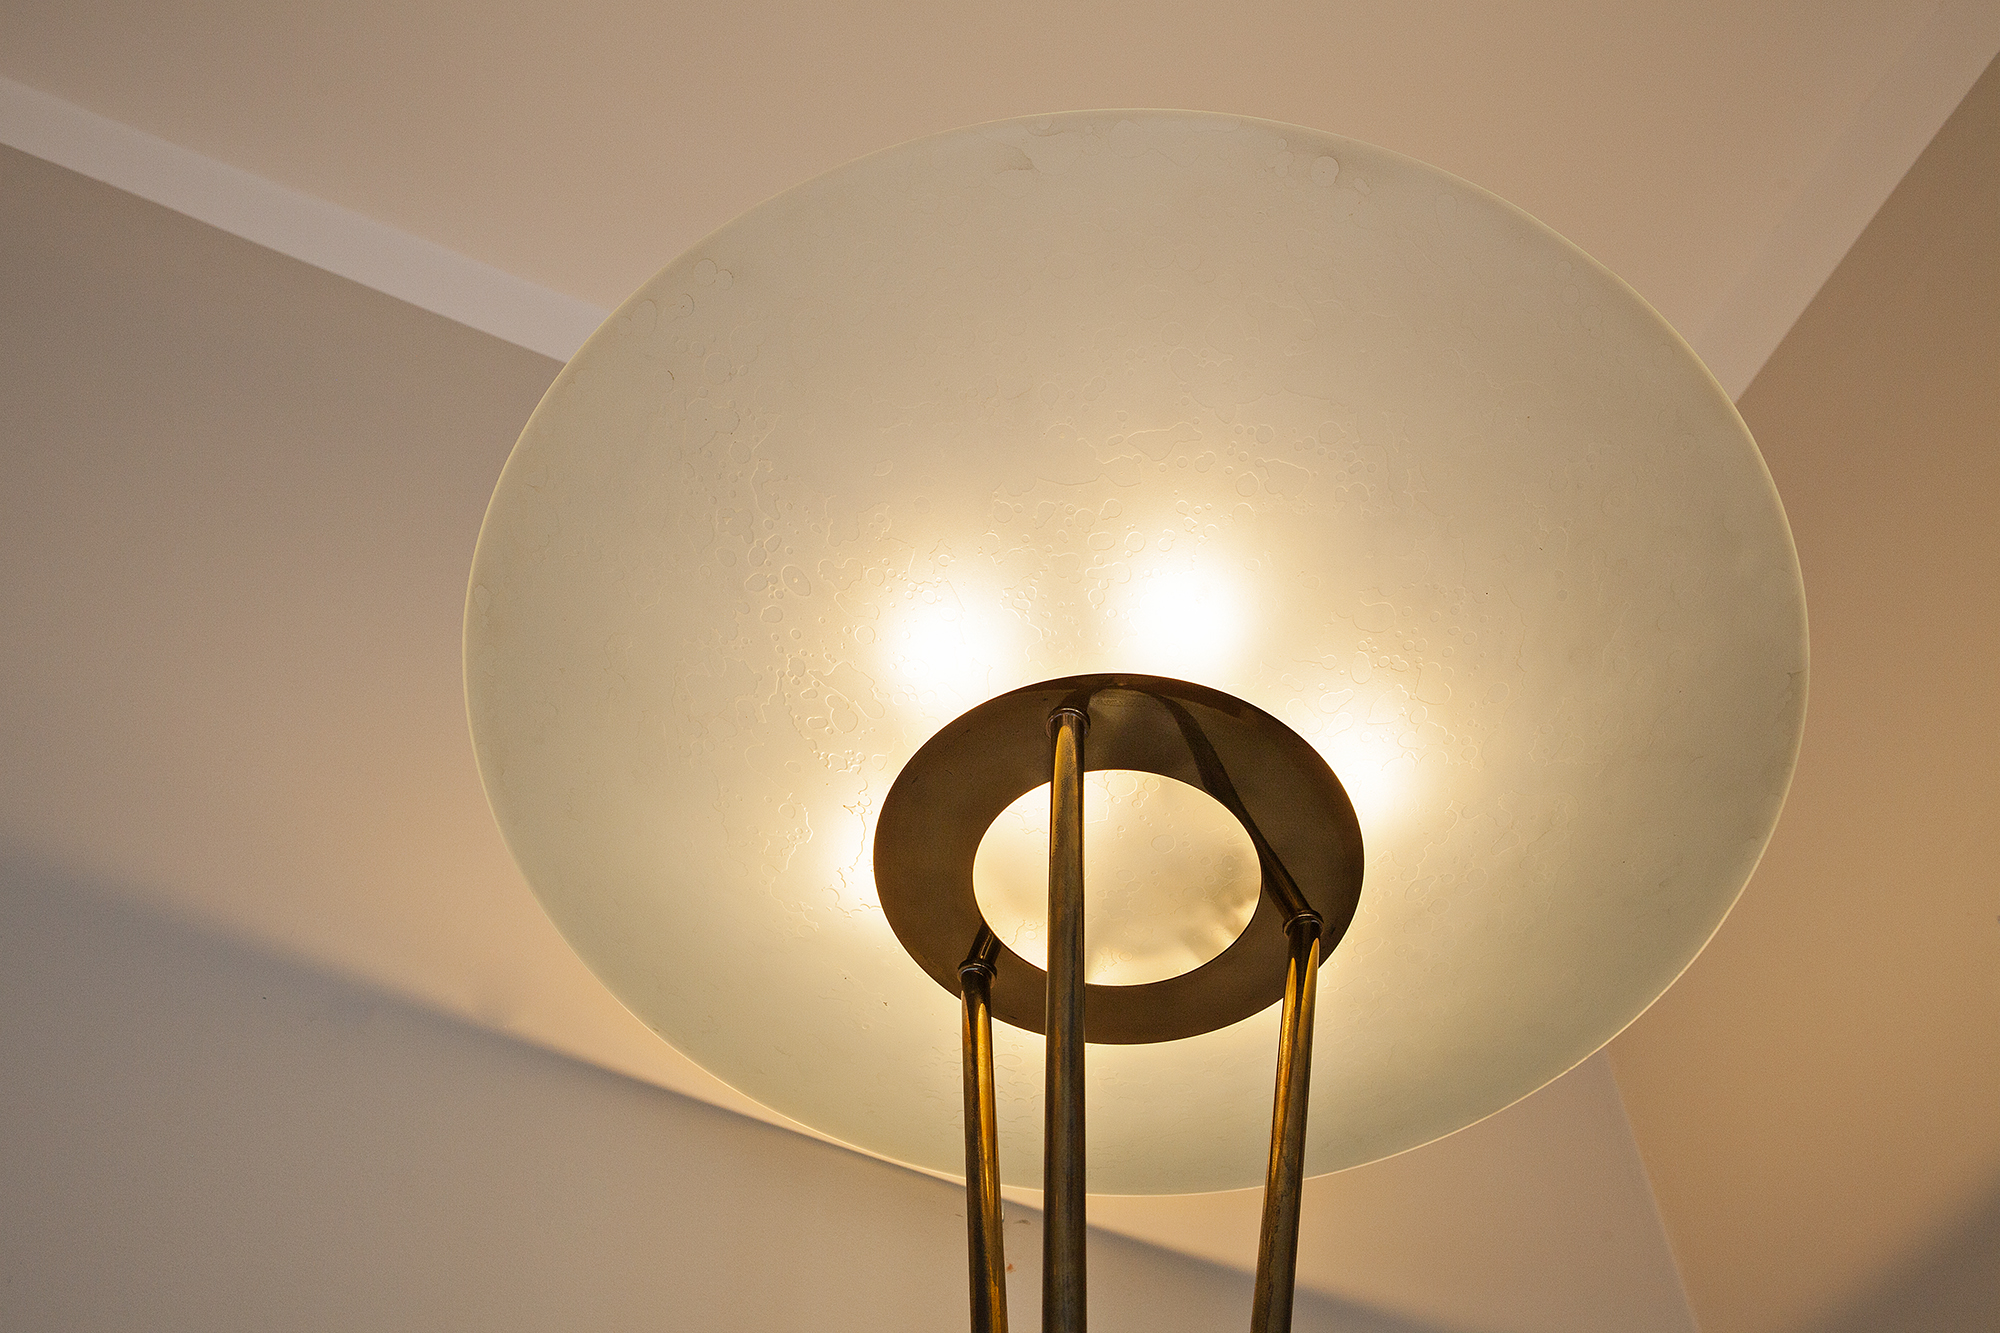 Floor lamp by Stilnovo